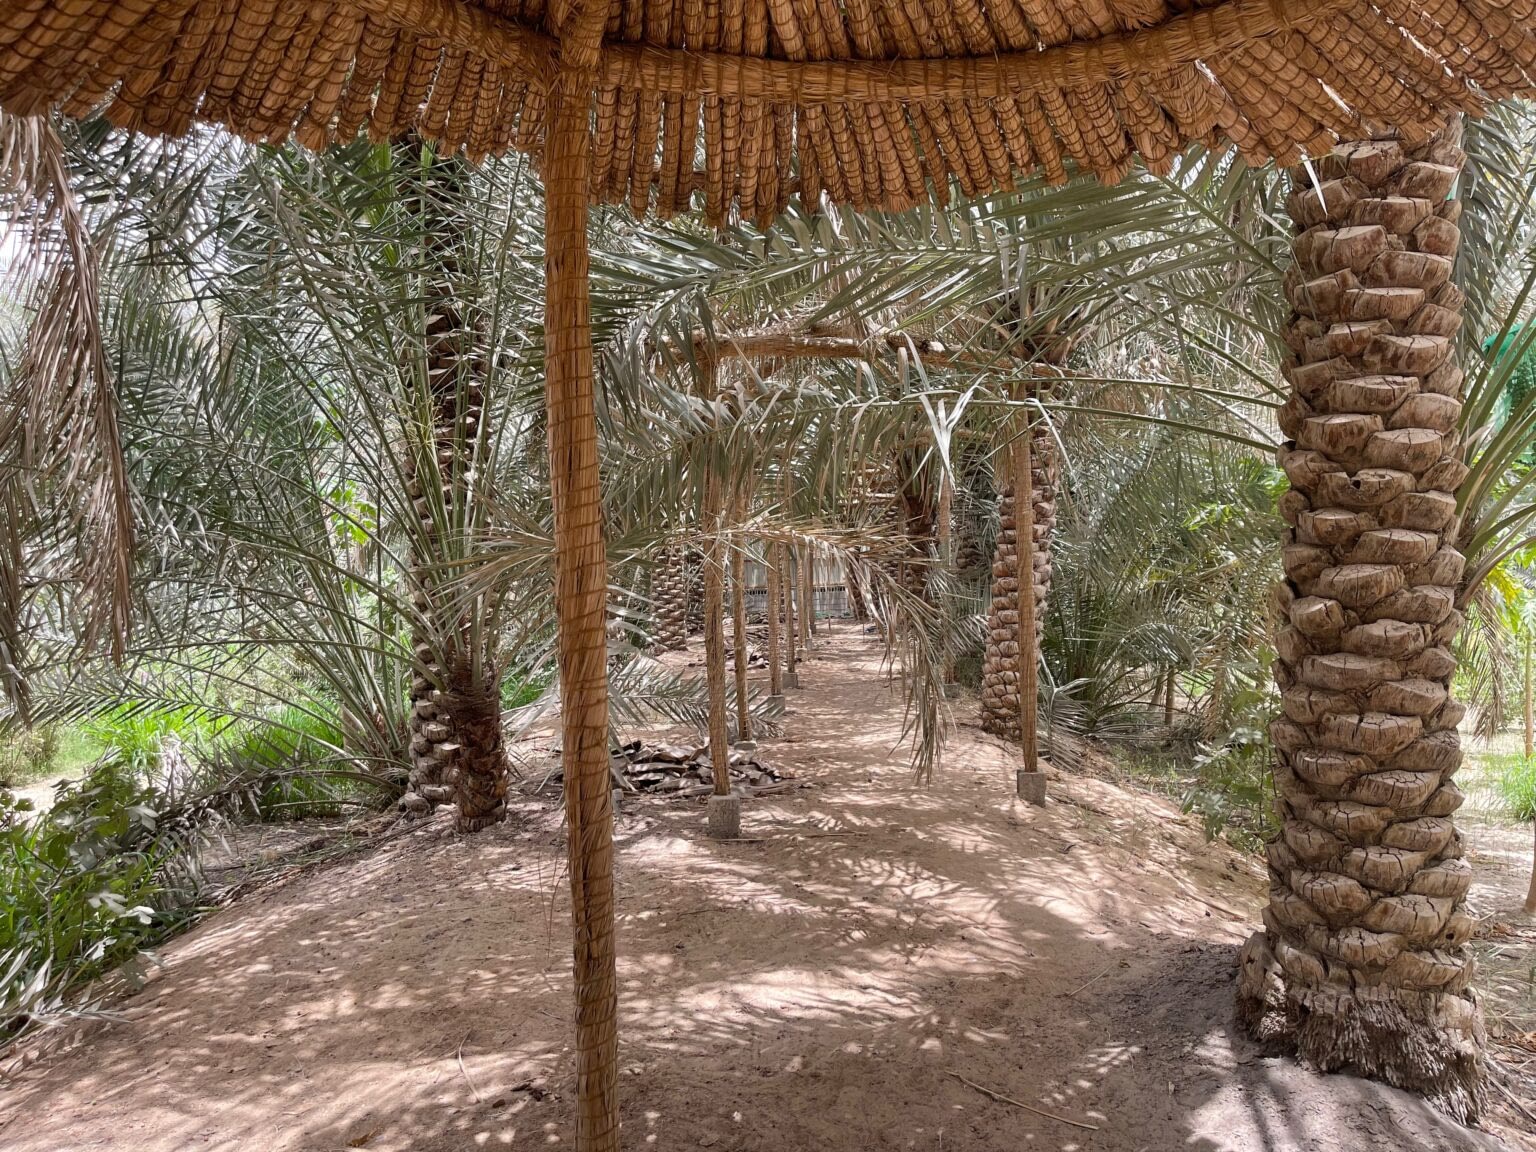 Al-Ahsa date farm oasis